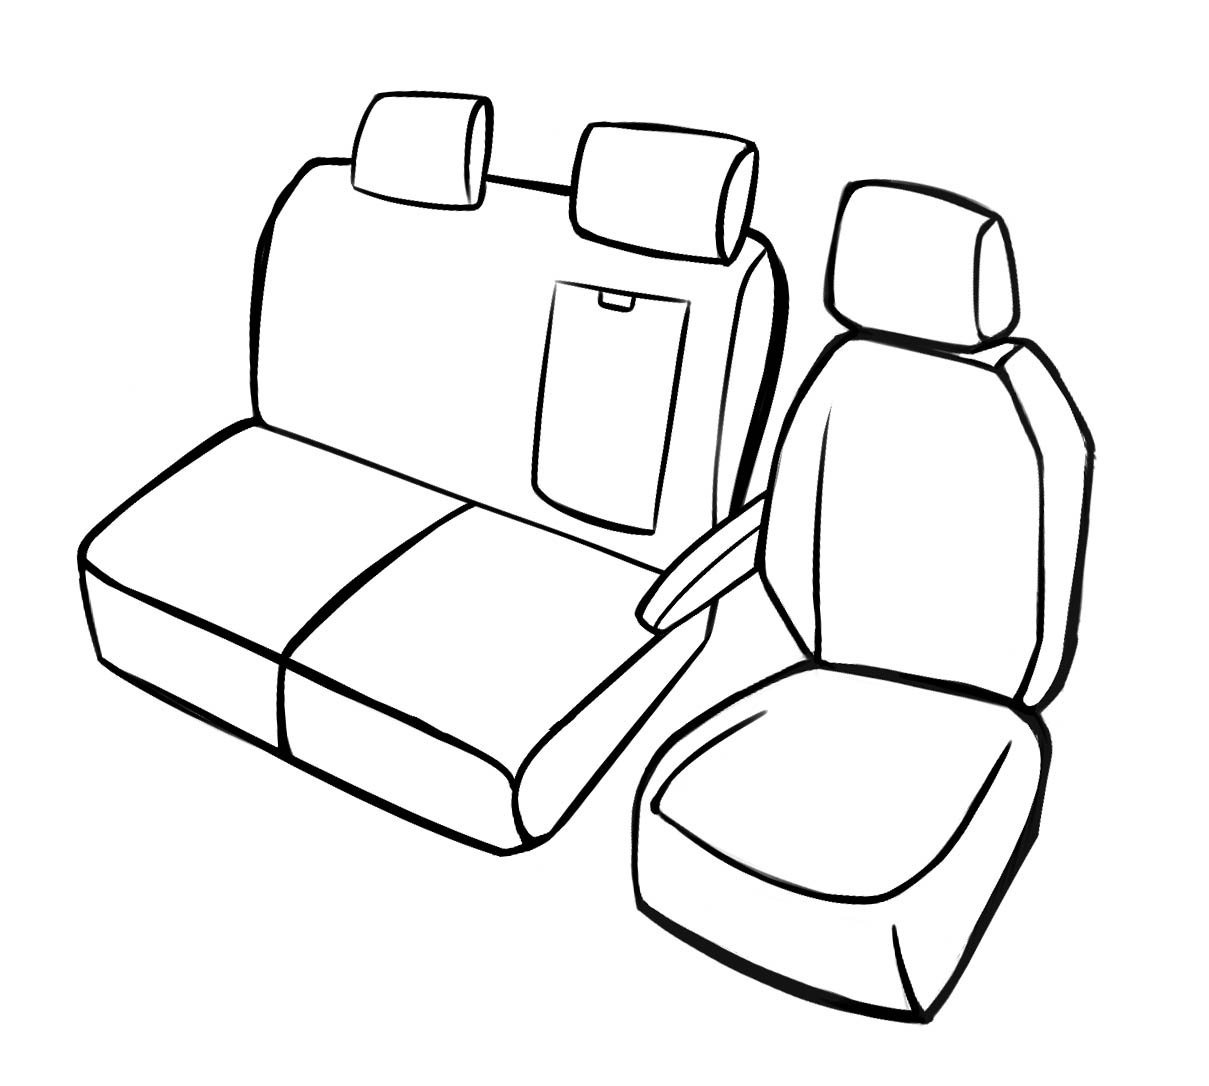 Premium Housse de siège pour Citroen Jumpy III 2016- auj., 1 housse de siège simple avant + housse d'accoudoir, 1 couverture de banc double